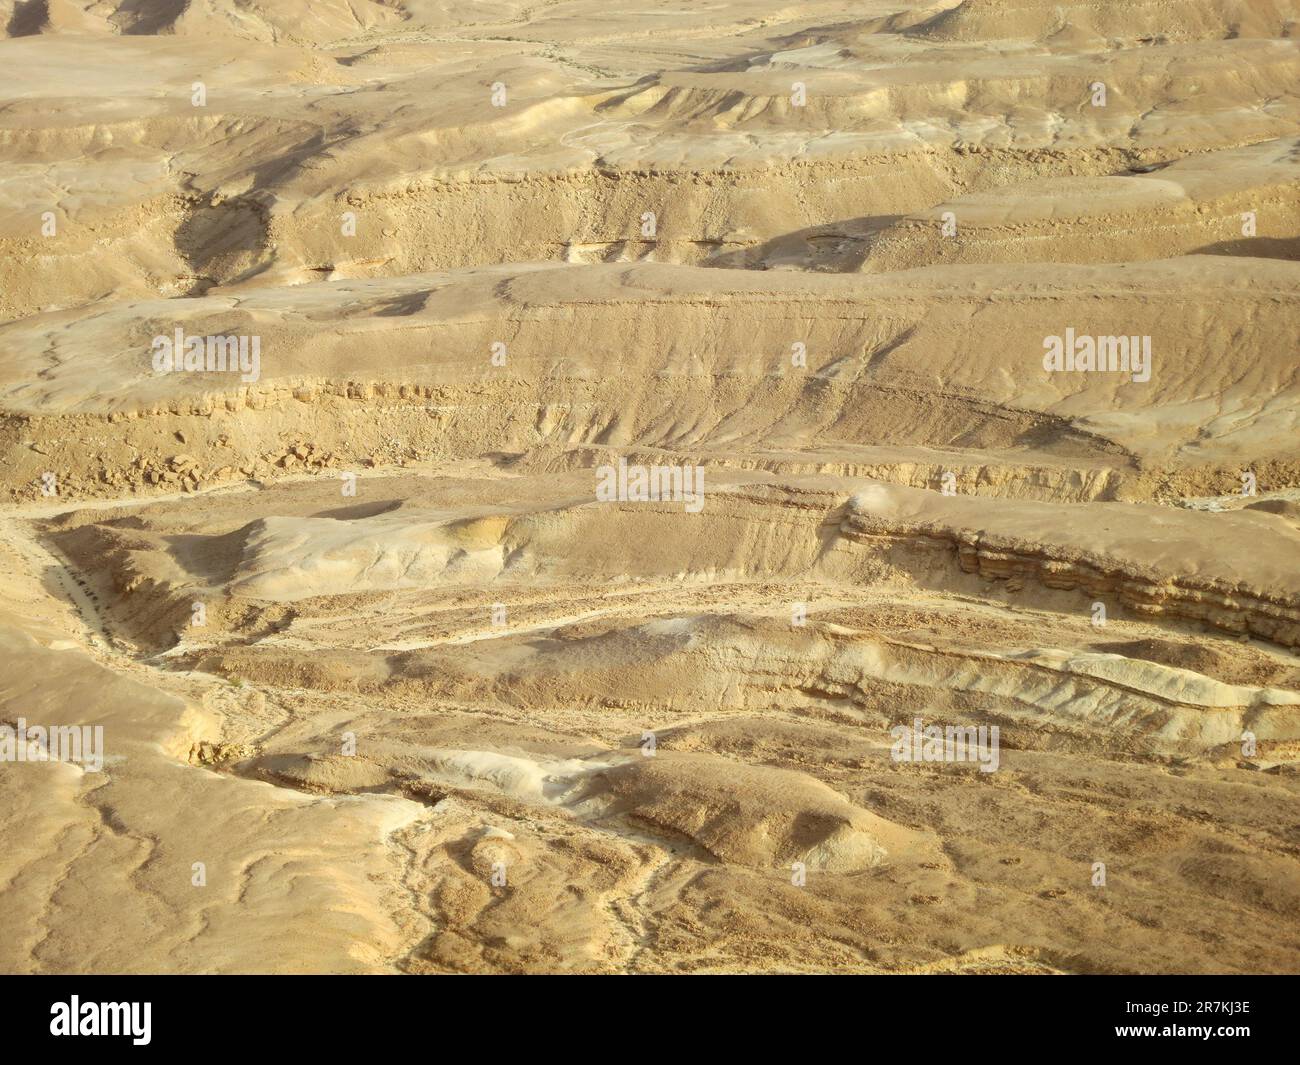 Zuidelijke Arava vallei, sud della valle di Arava; Negev, Israele Foto Stock